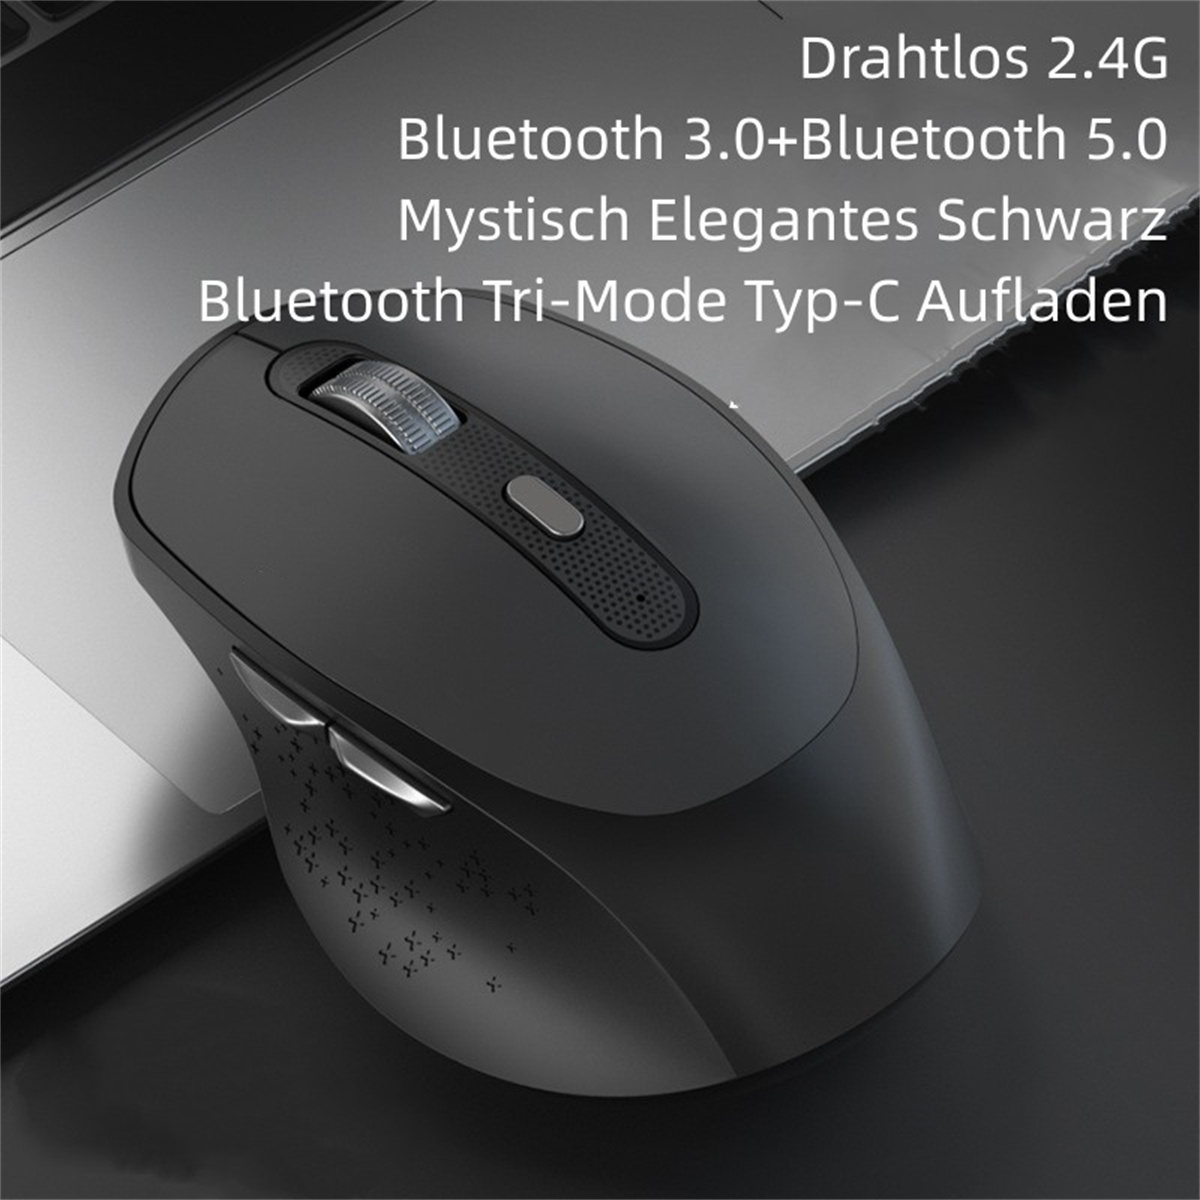 Silent Maus Wireless SYNTEK Mouse Schwarz Maus, schwarz Bluetooth Rechargeable